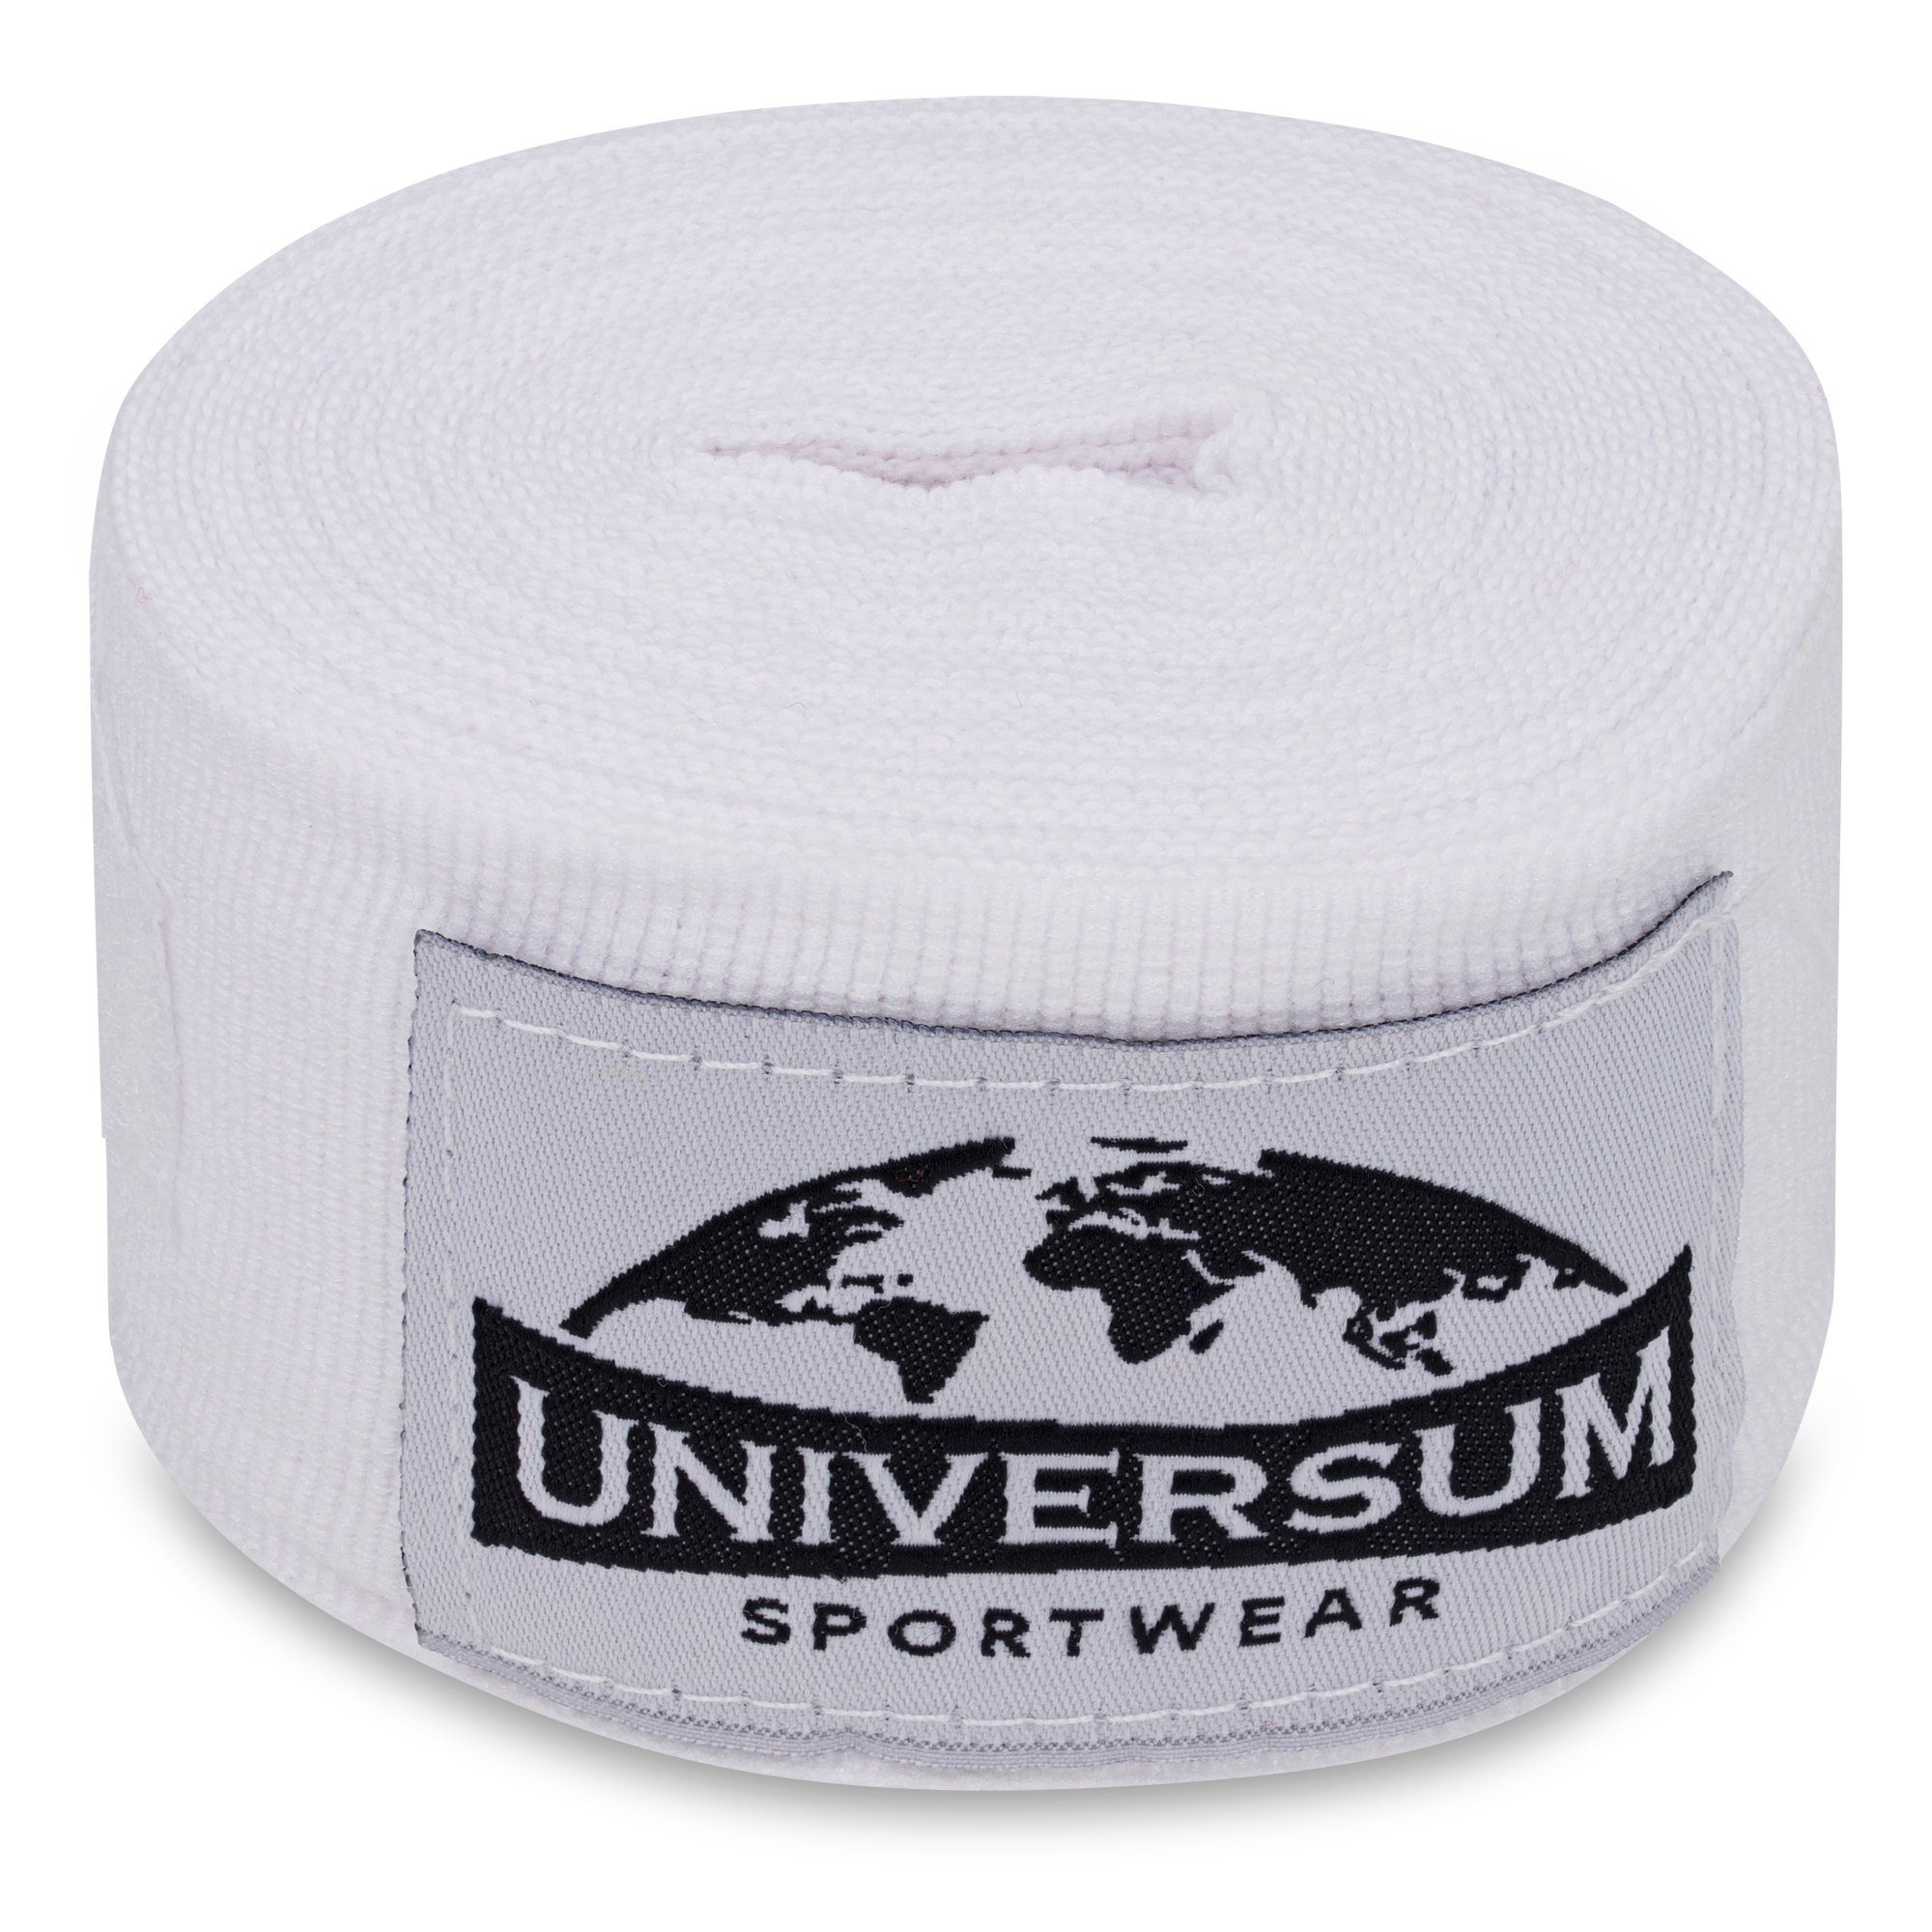 Bandage, Handgelenk Klettverschluss Weiß-Schwarz mit langen Sportwear Universum Boxbandagen